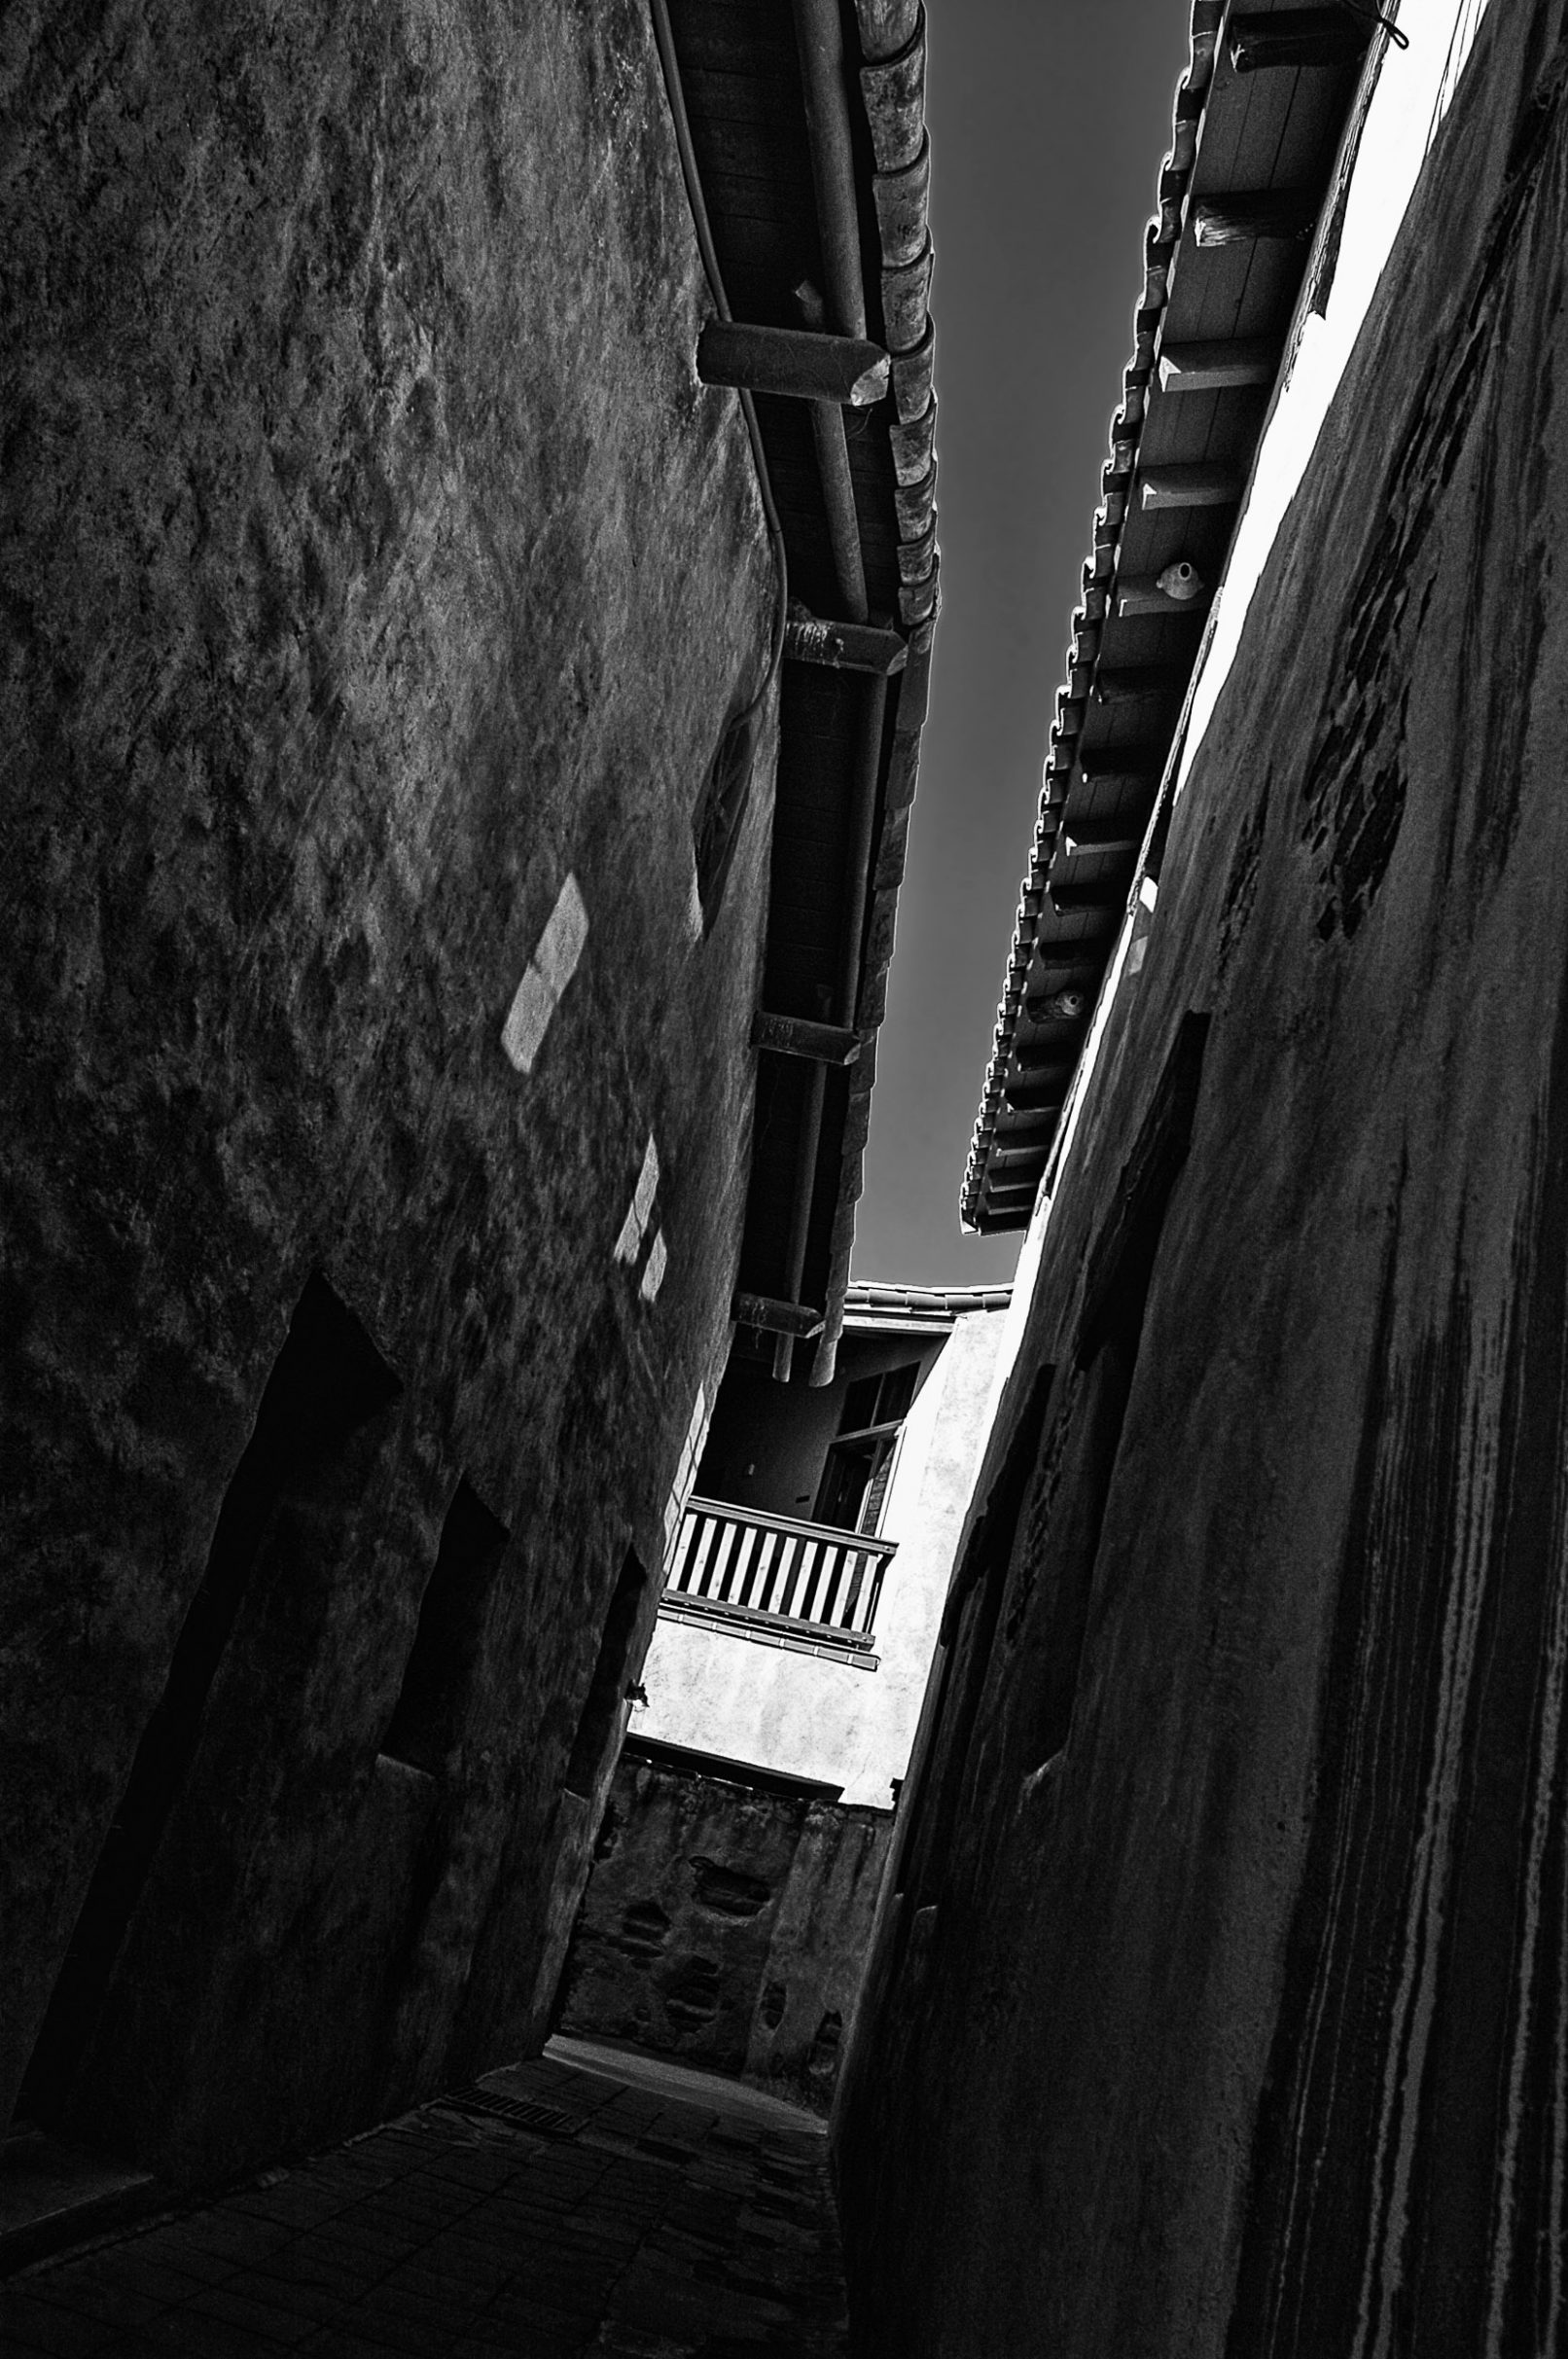 Dark alley between Spanish-styled buildings